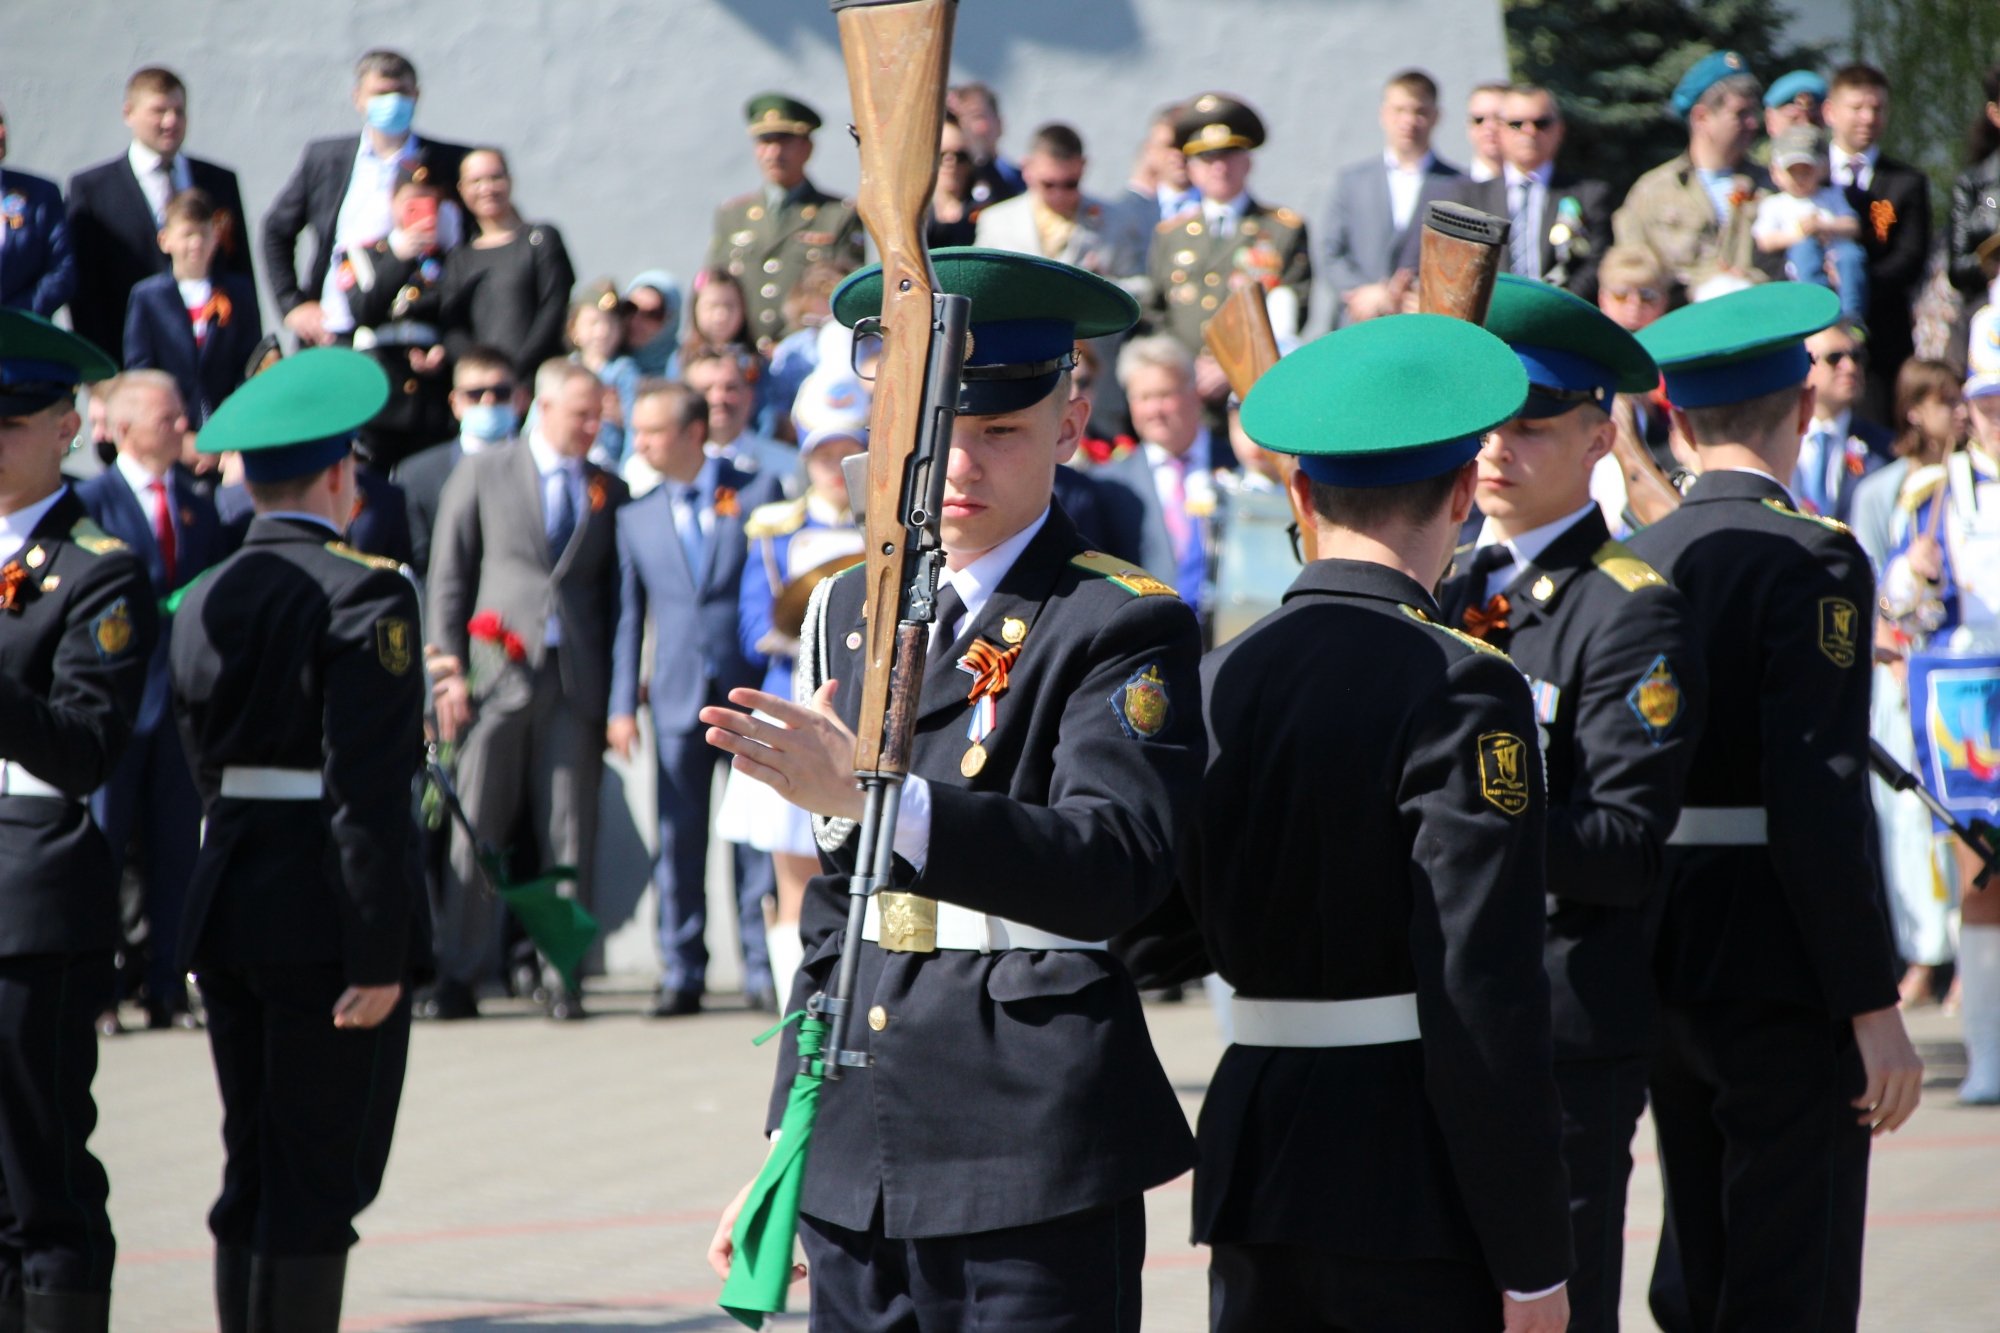 В Челнах хор из 250 учеников исполнил песни военных лет (видео)